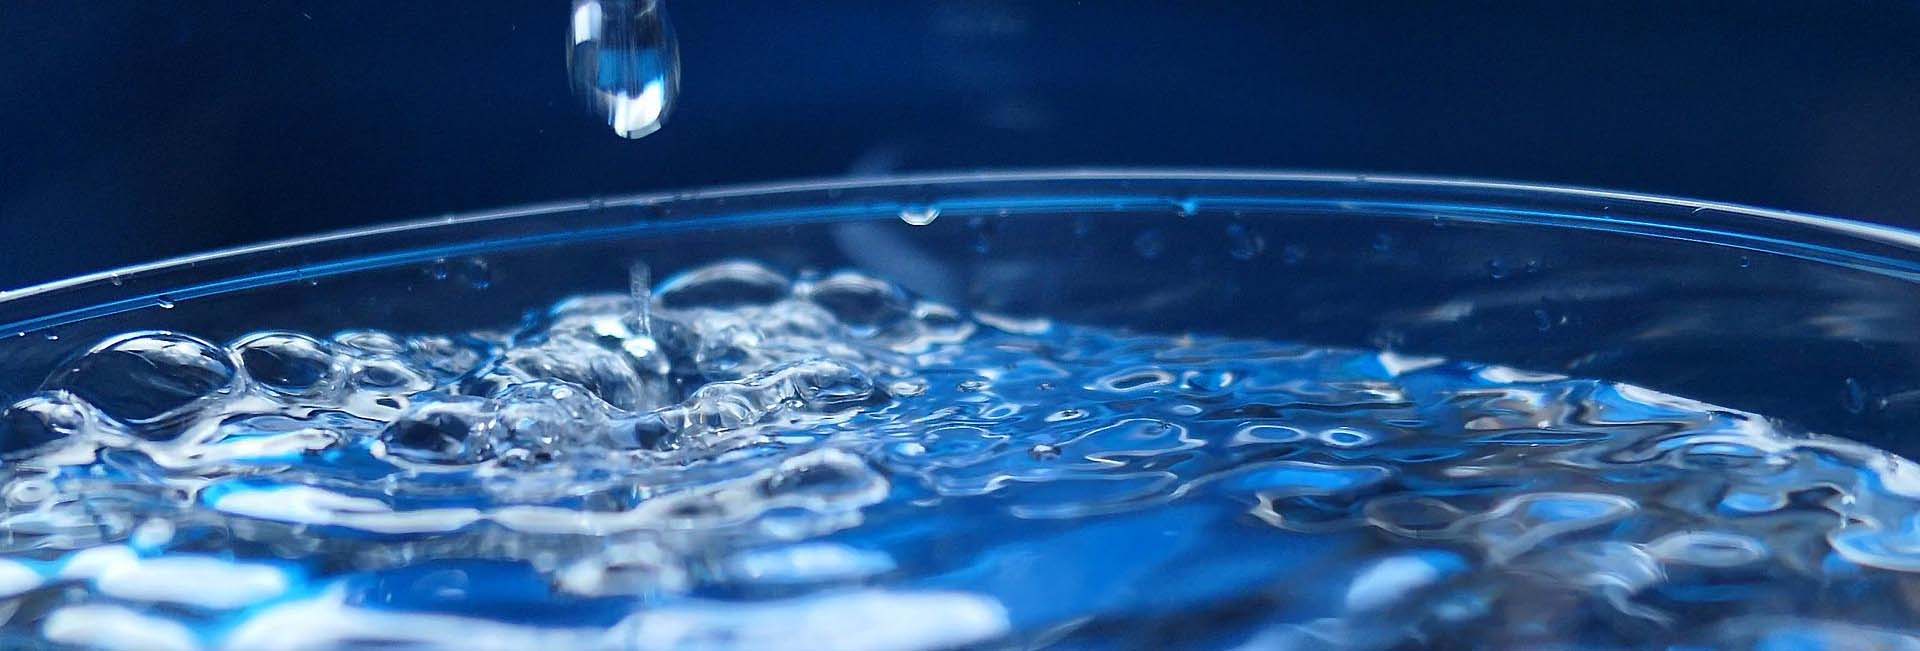 Kastl: Ab dem 20. August soll der Leitwert für PFOA im Trinkwasser deutlich  unterschritten werden.